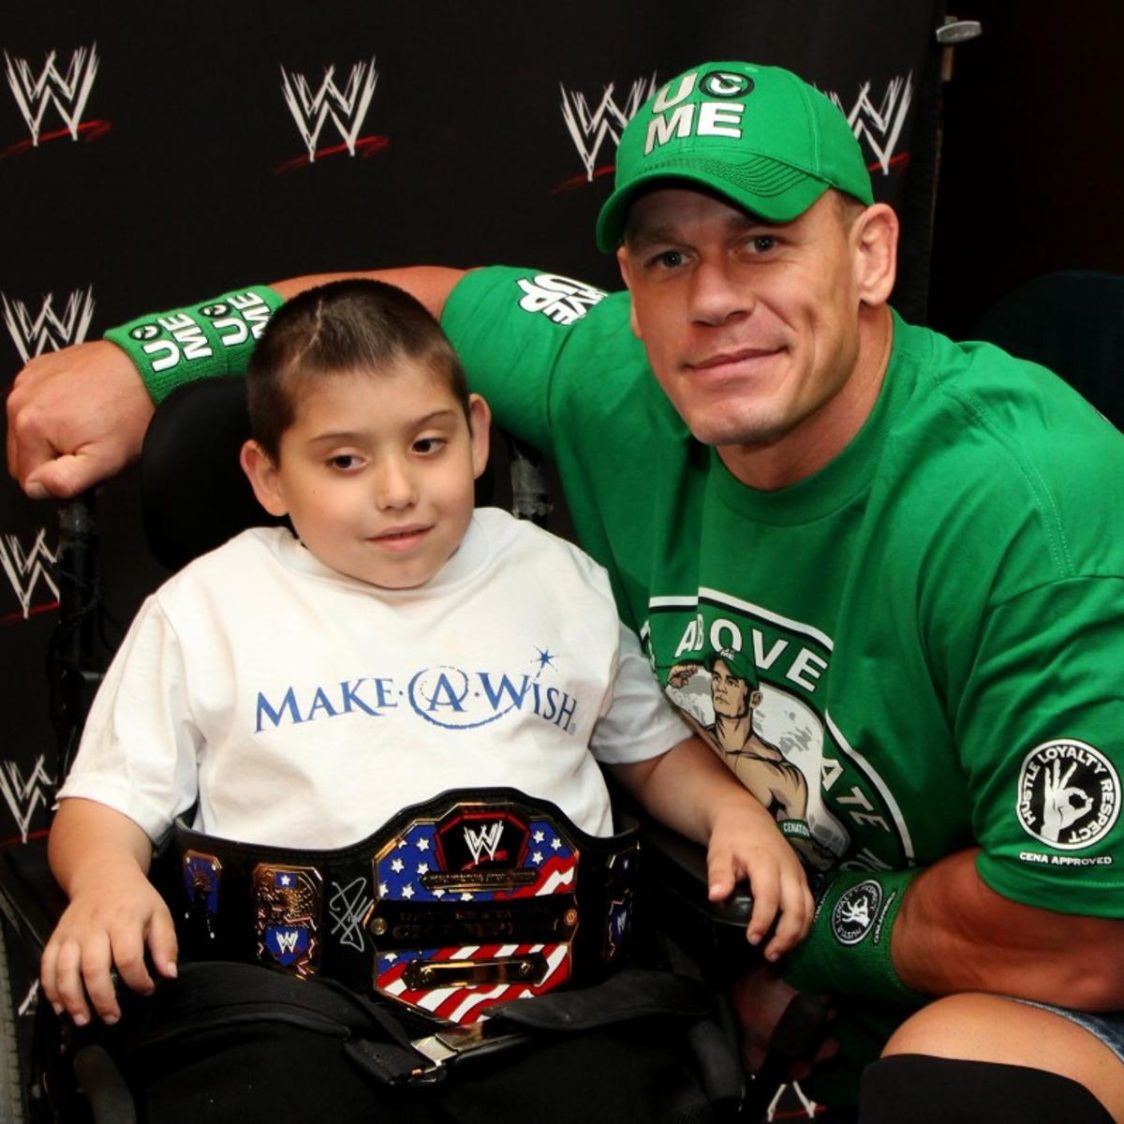 John Cena si dedica regolarmente alla beneficenza. Aiuta principalmente l'organizzazione non-profit Make-A-Wish Foundation